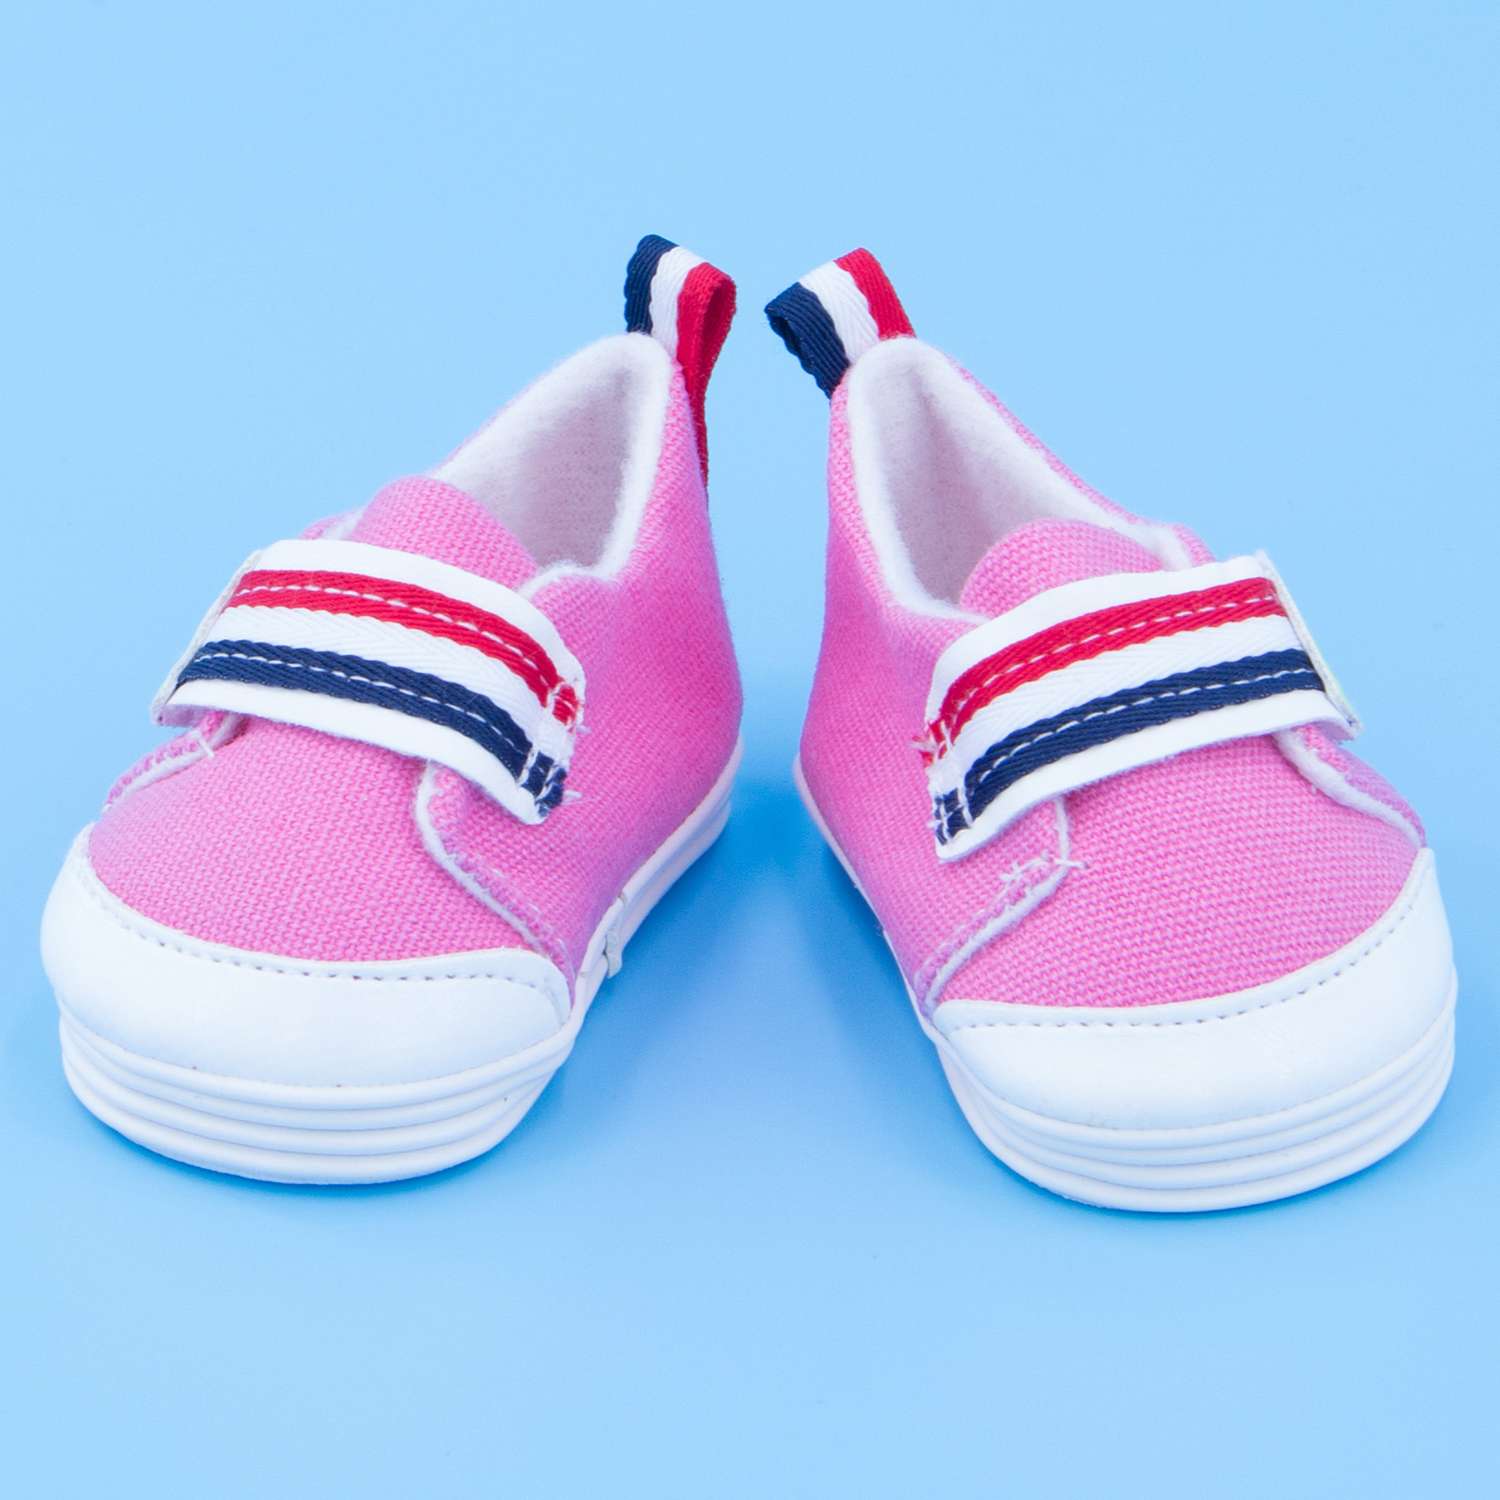 Обувь Модница для пупса 43-48 см 6150 розовый 6150розовый - фото 16